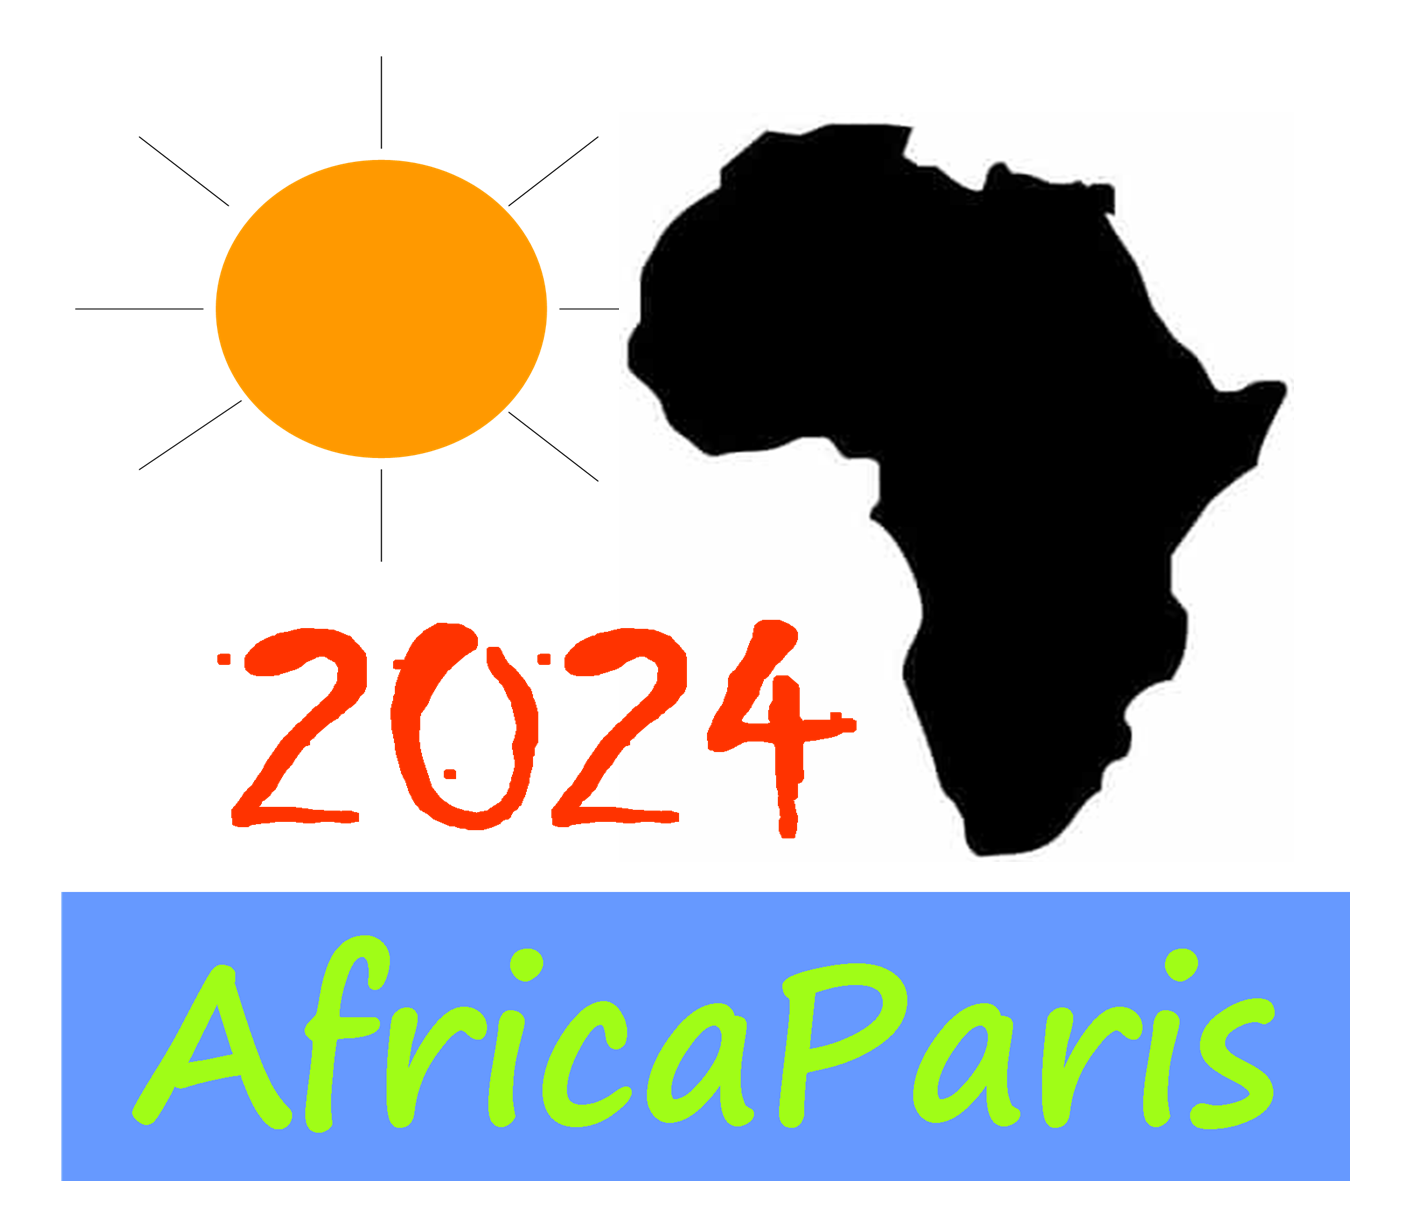 Africa Paris 2024